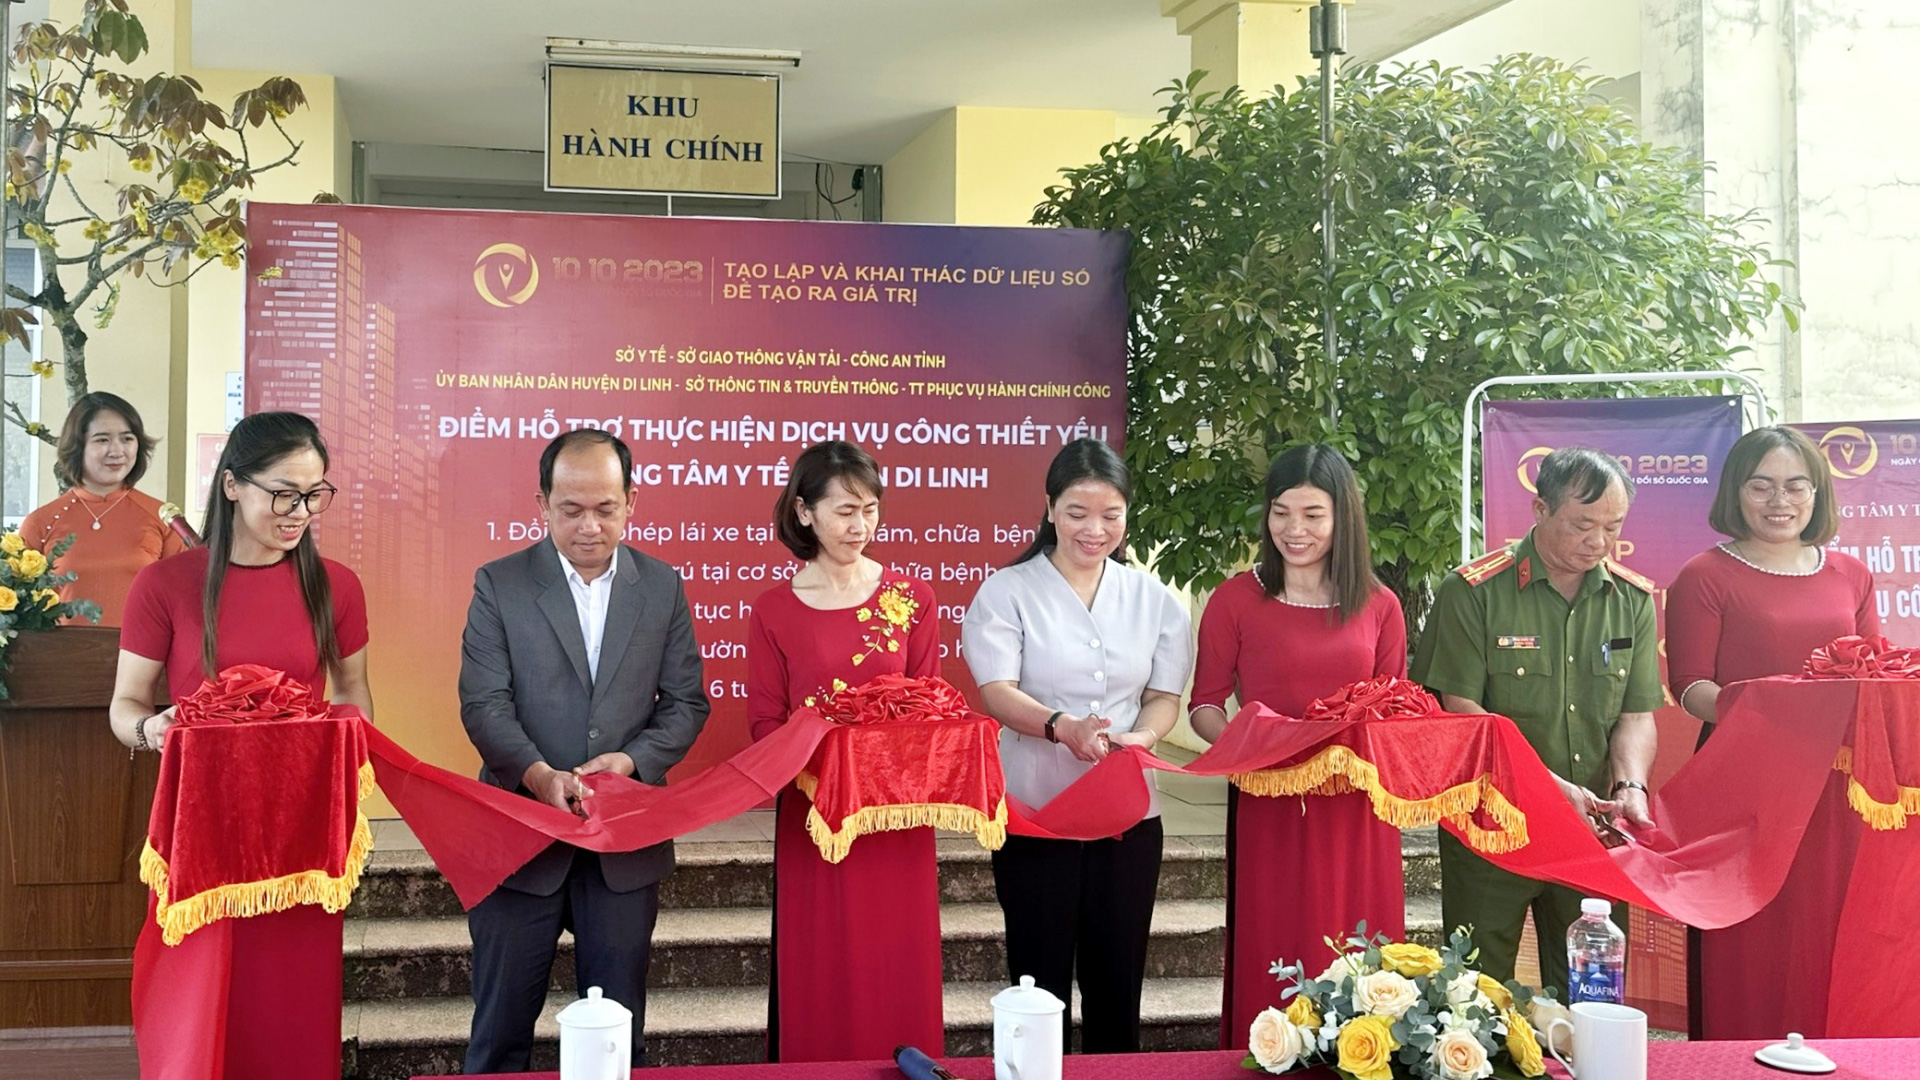 Khai trương điểm hỗ trợ thực hiện dịch vụ công trực tuyến thiết yếu tại Trung tâm Y tế huyện Di Linh